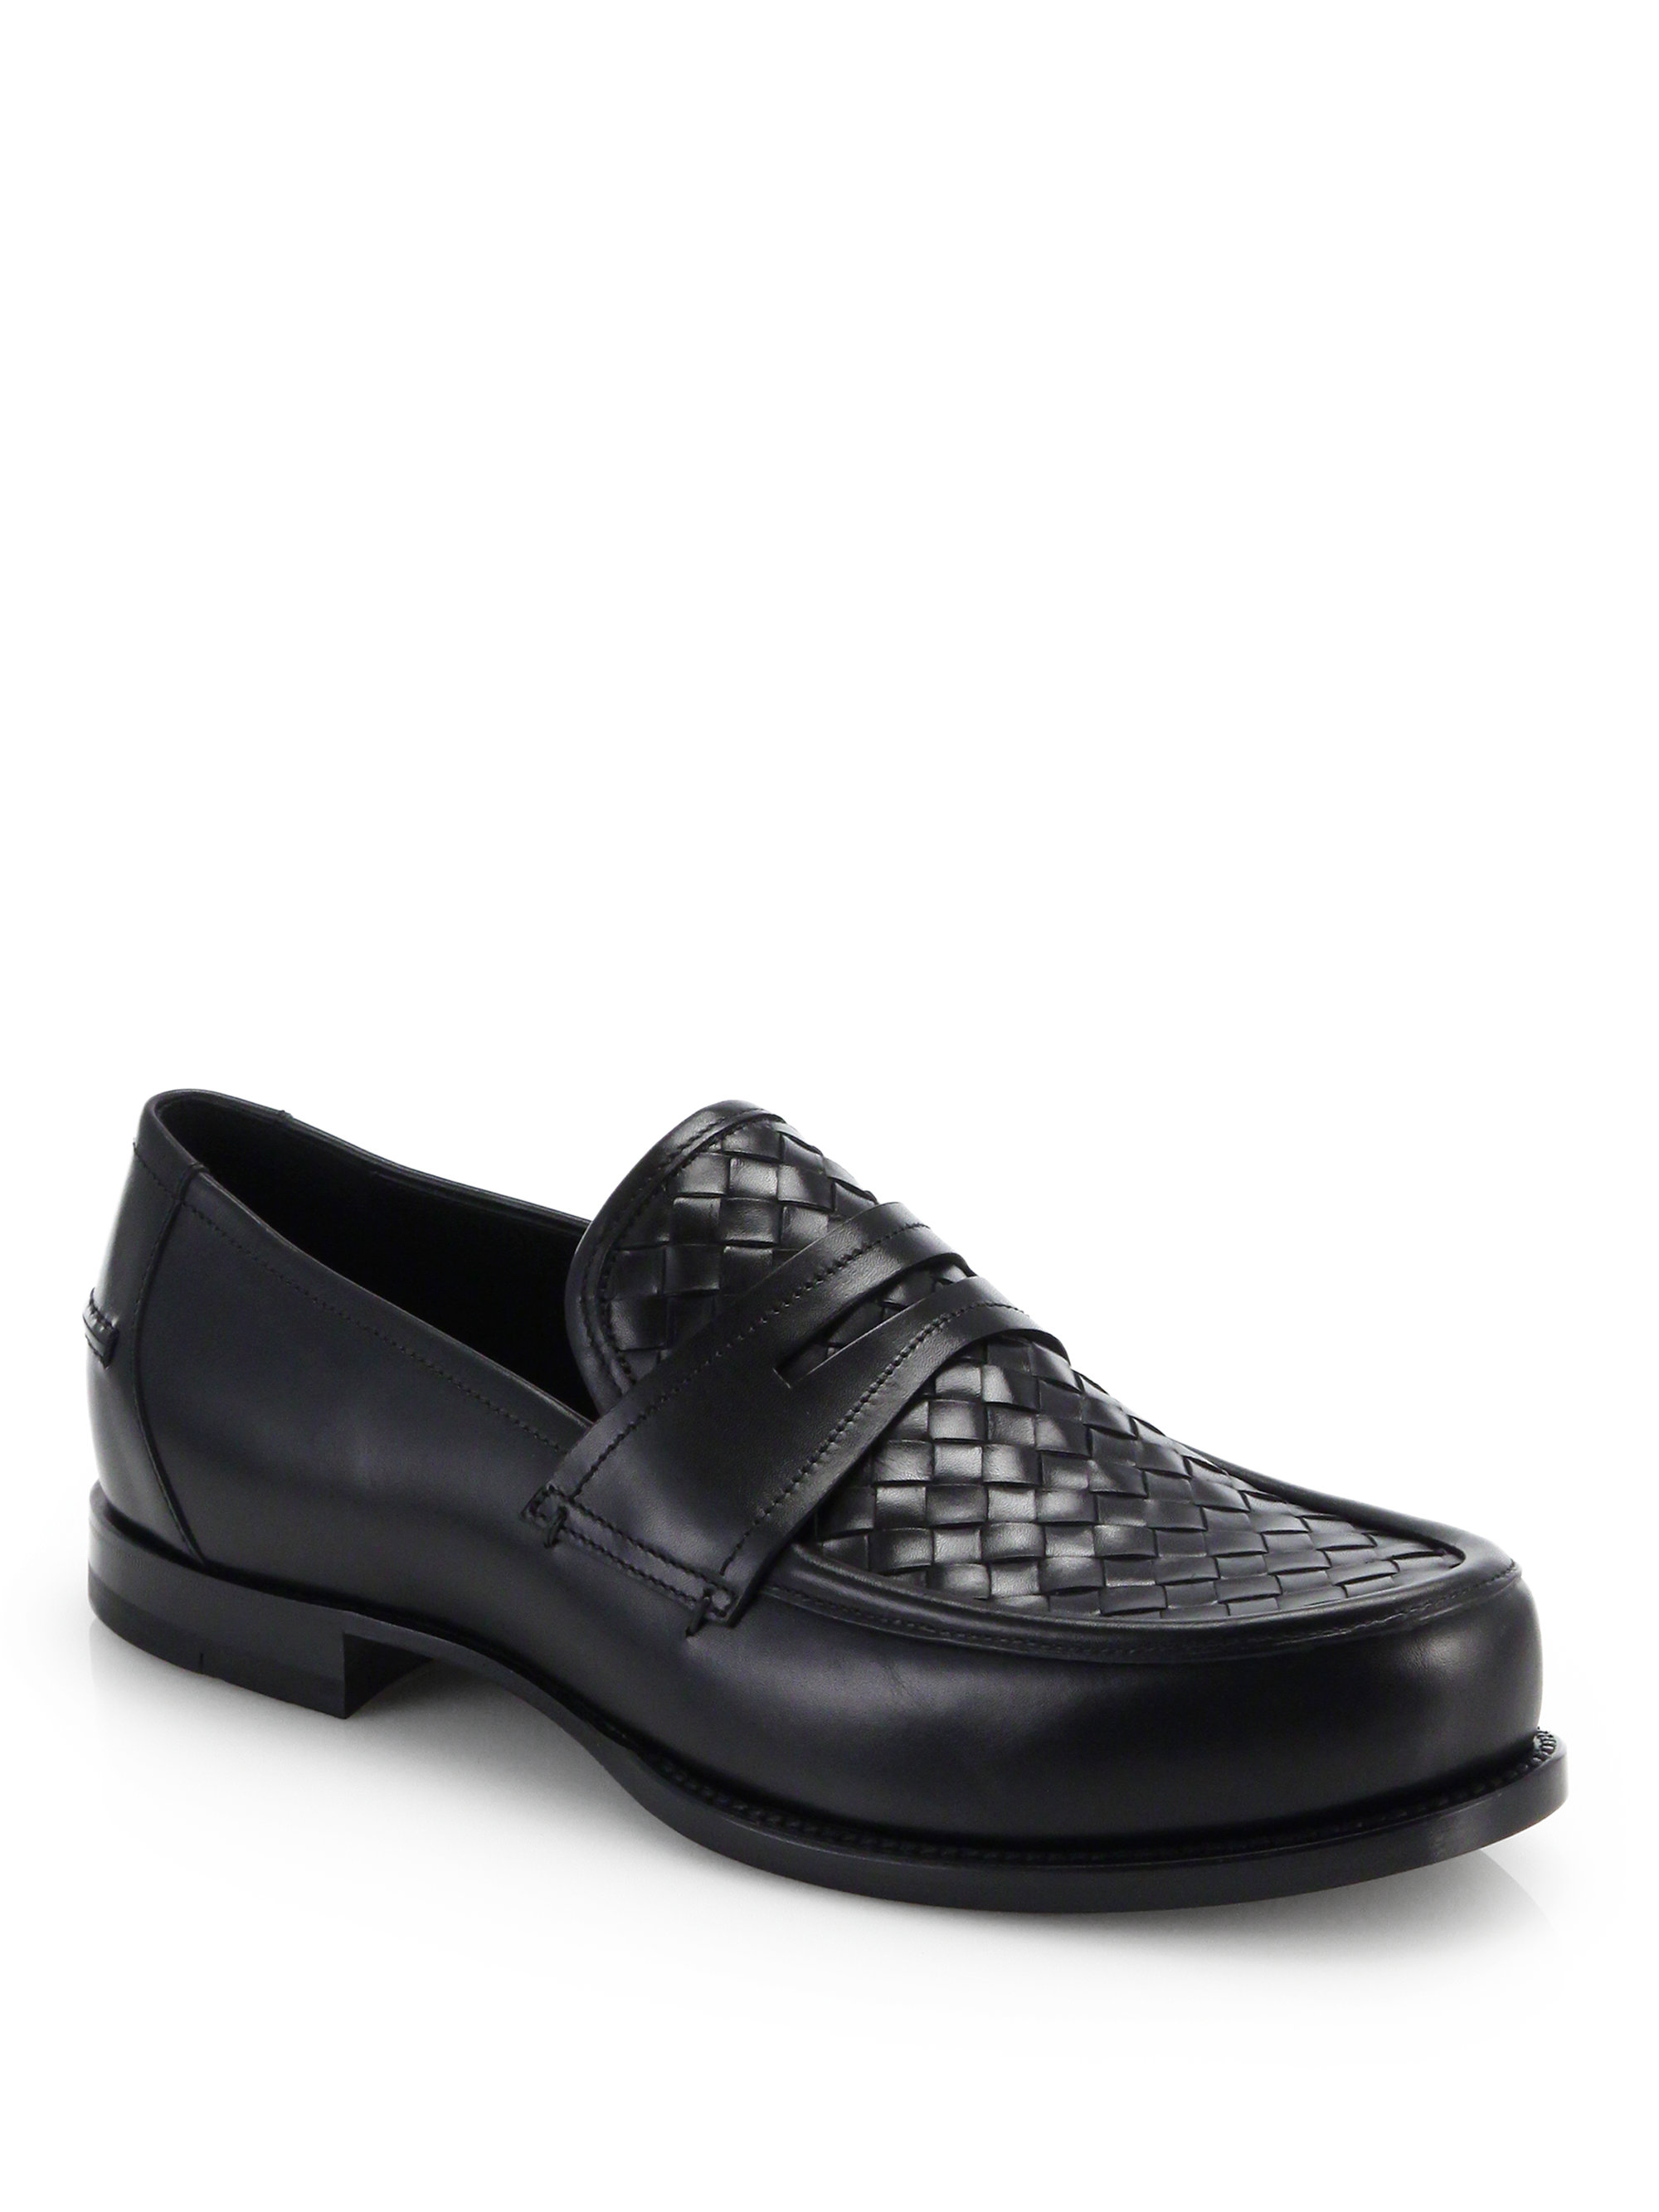 Bottega Veneta Intrecciato Loafers in Black for Men | Lyst